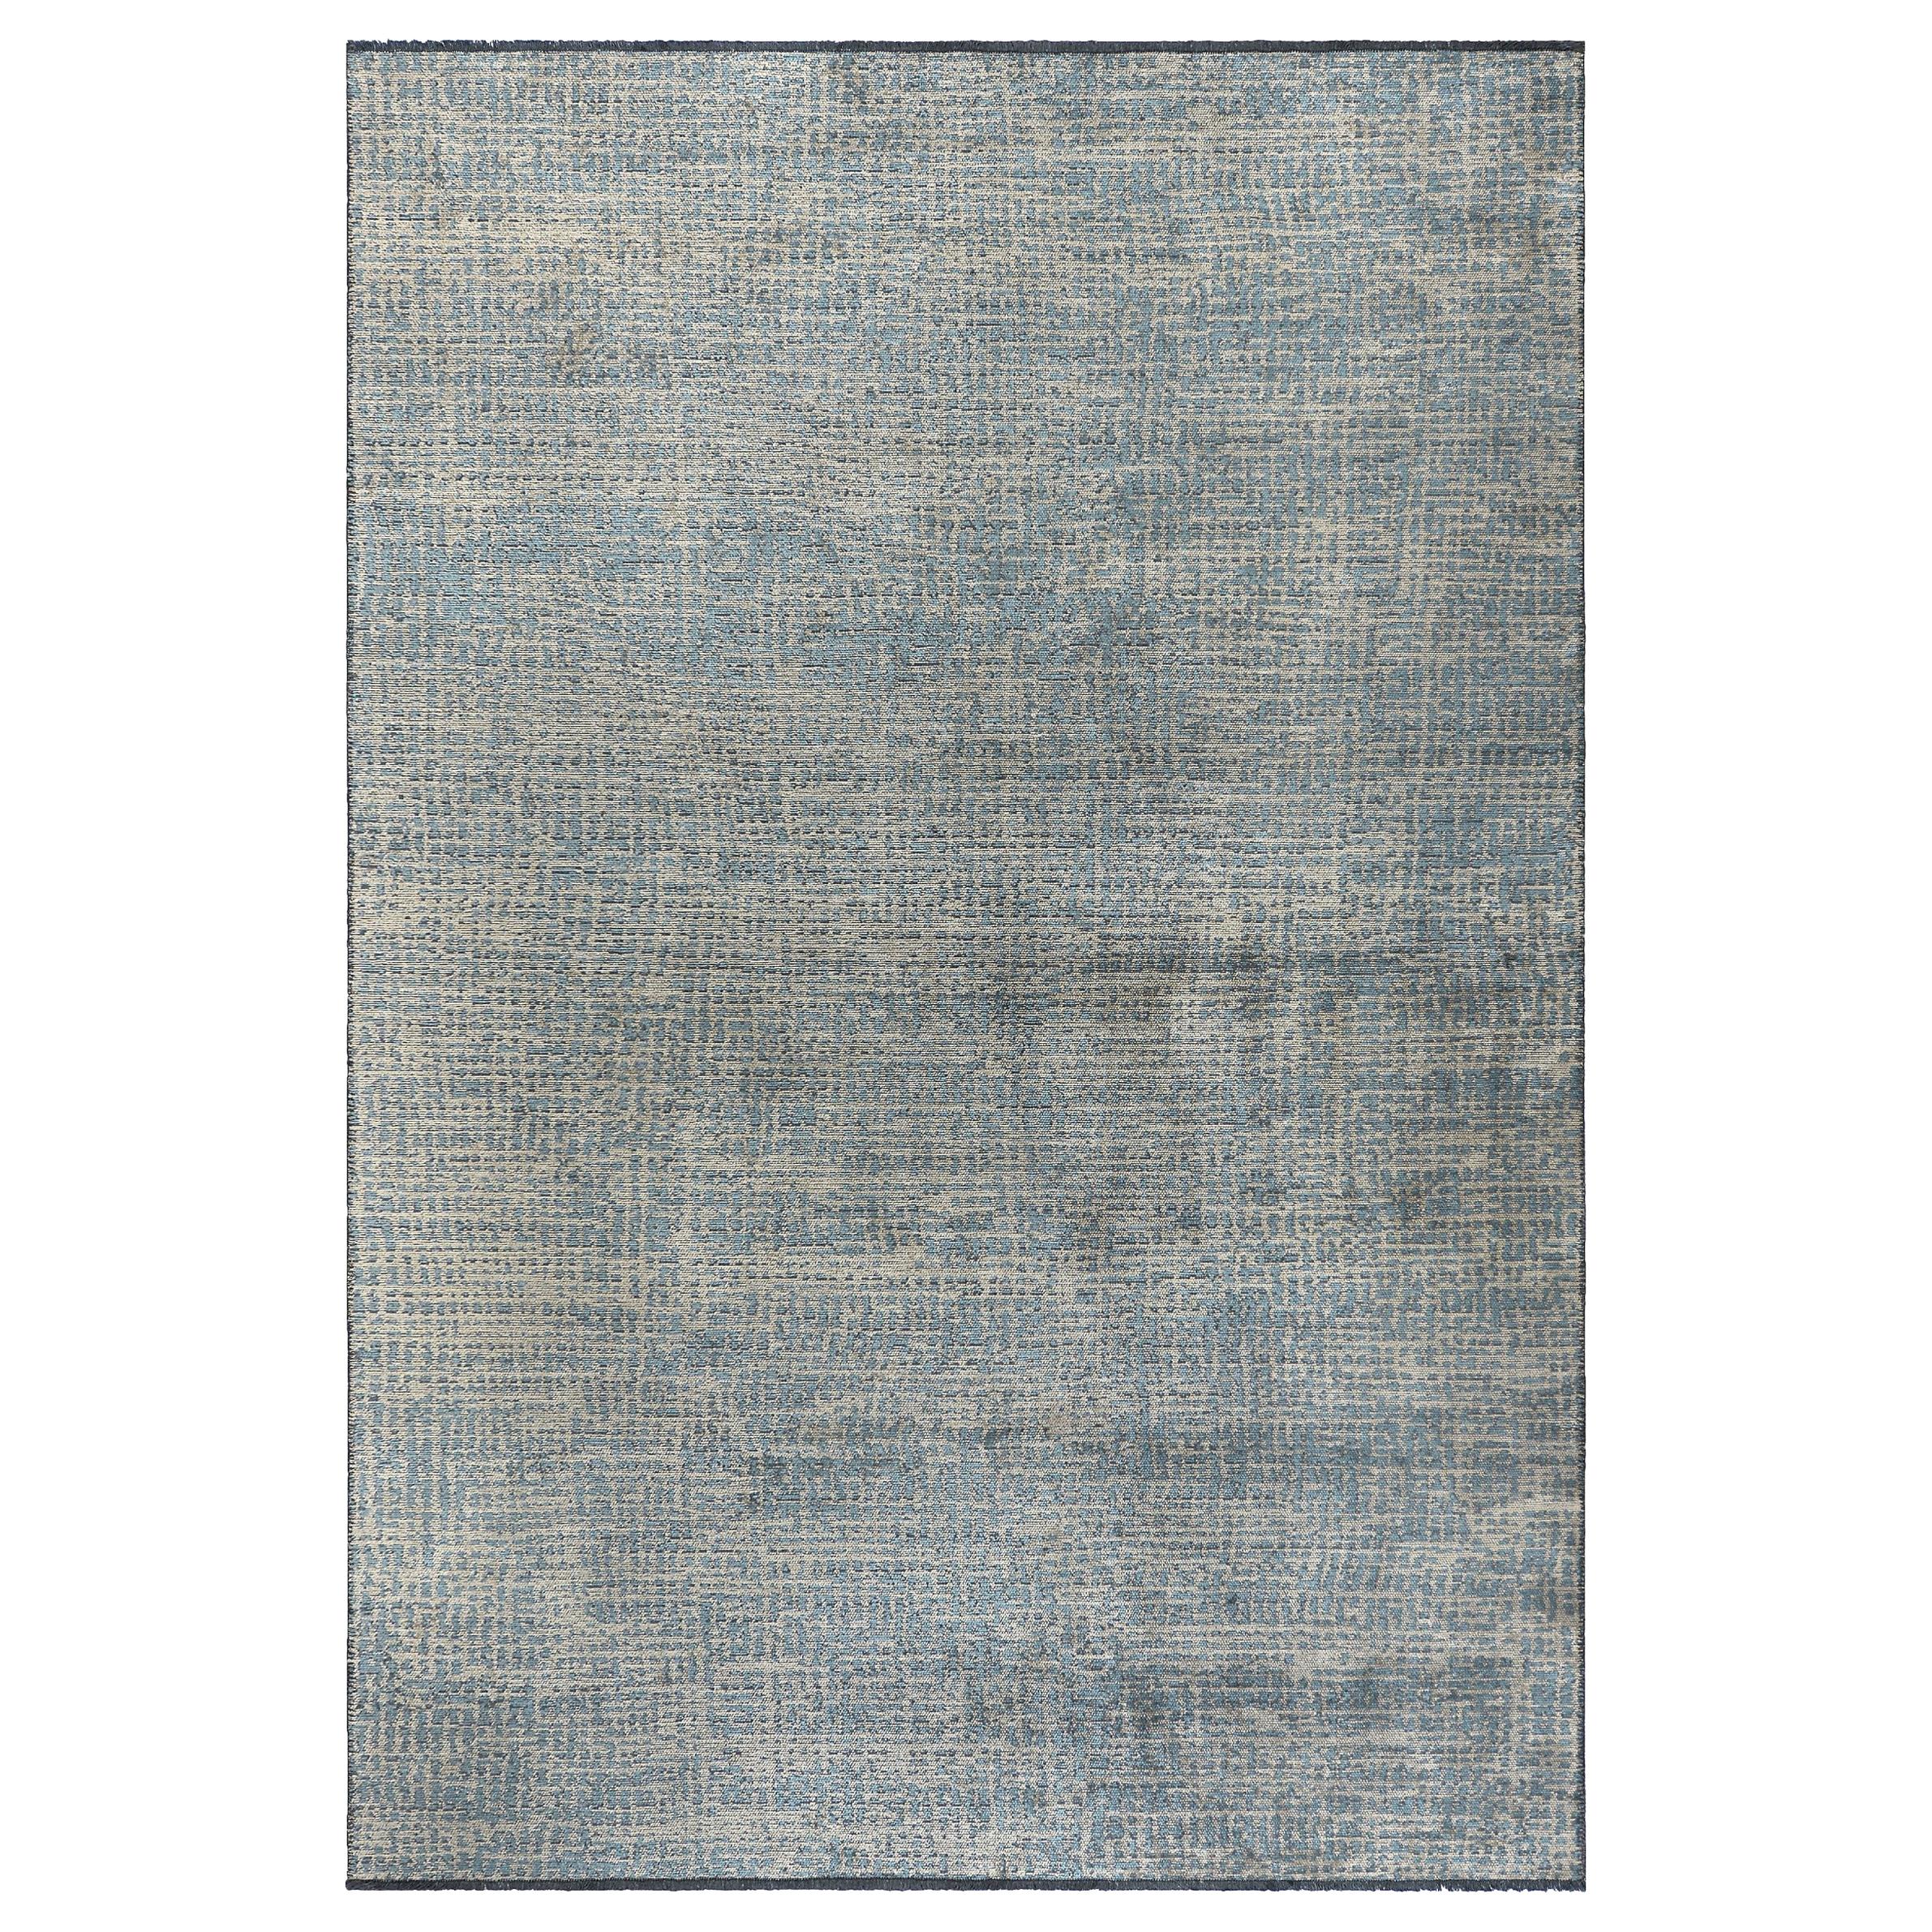 Hellblauer und silbergrauer Teppich mit abstraktem Geo-Muster und Glanz